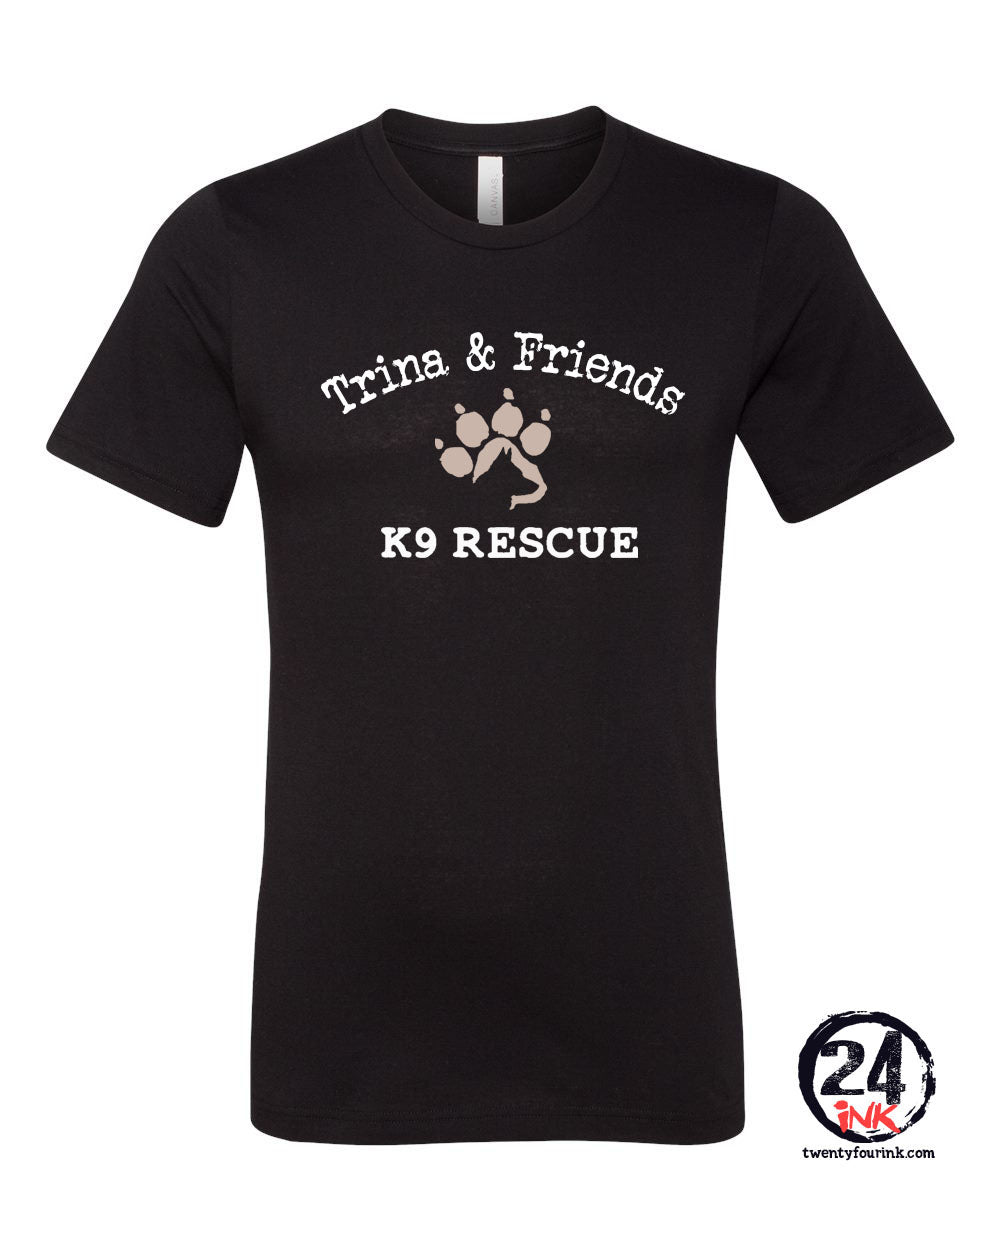 Trina & Friends design 6 T-Shirt